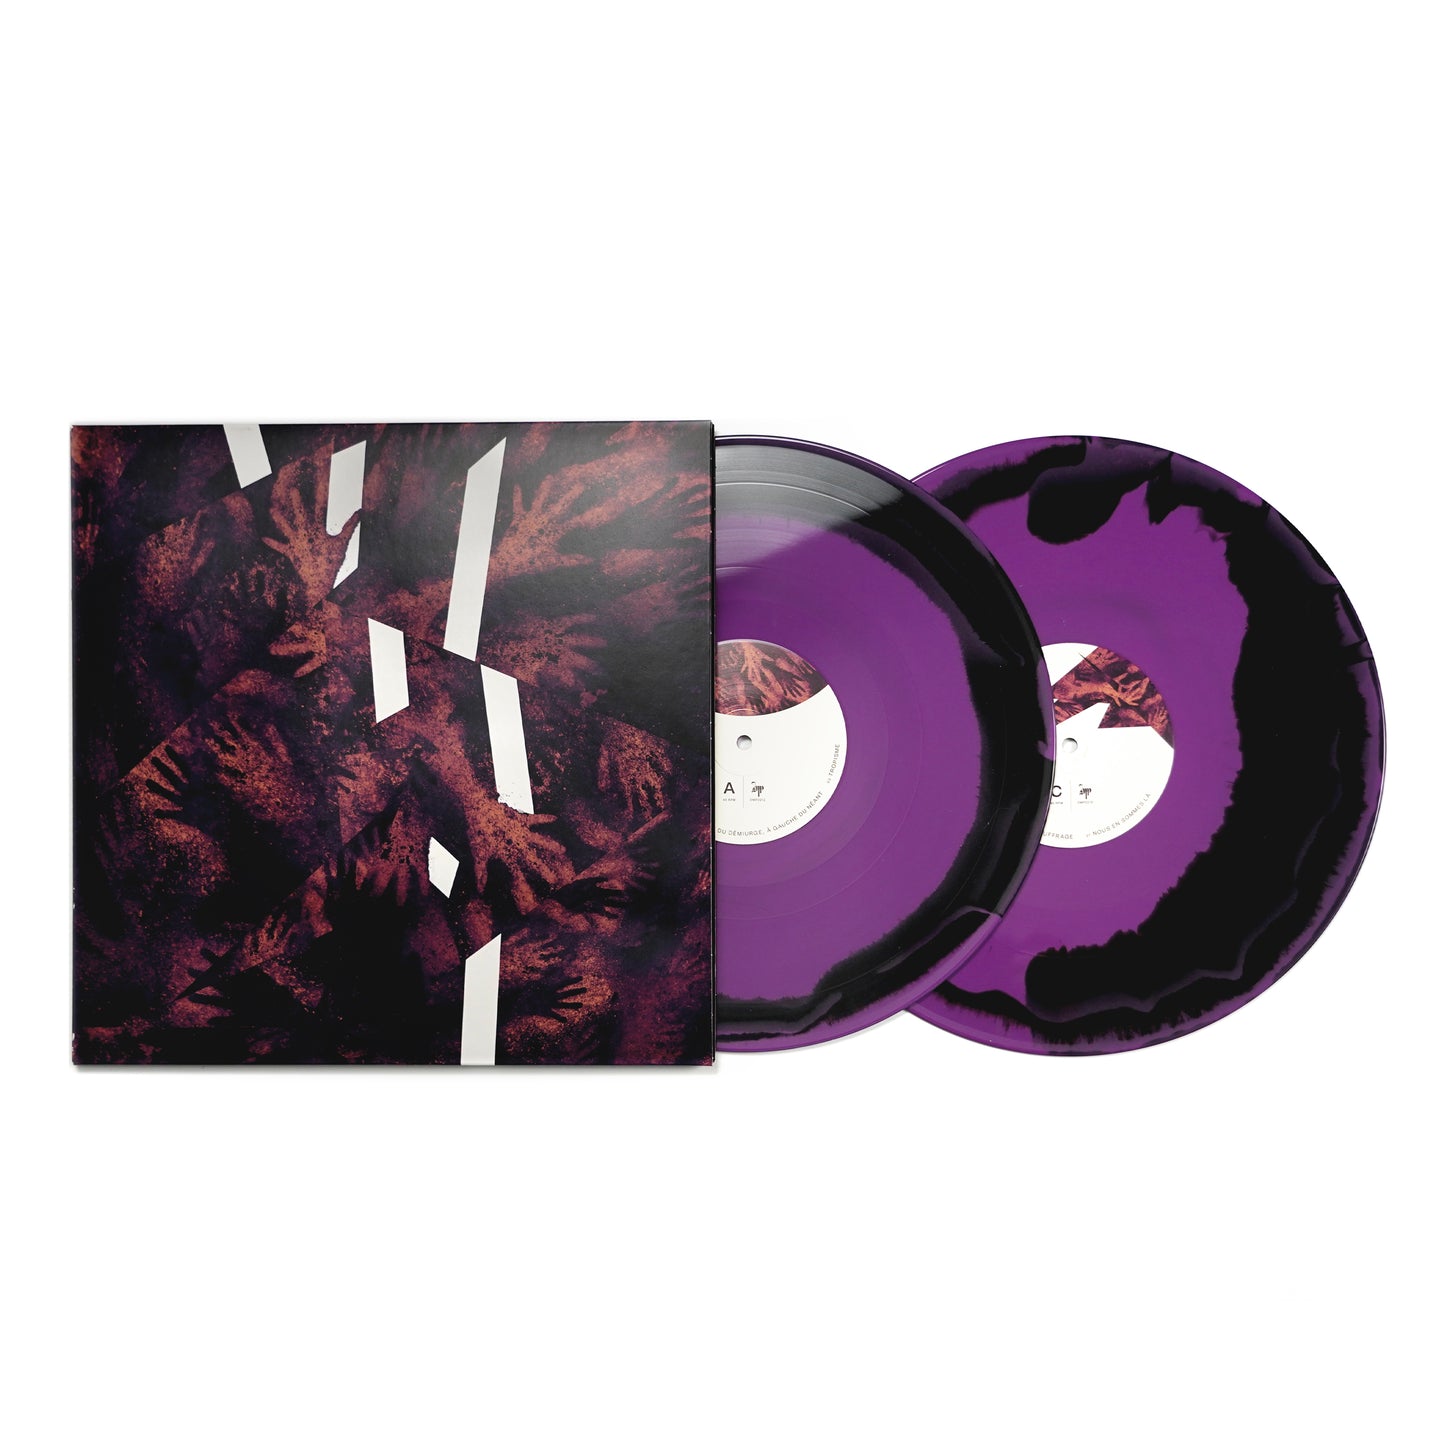 PLEBEIAN GRANDSTAND "RIEN NE SUFFIT" LP Purple Face A/Face B + T-Shirt Bundle